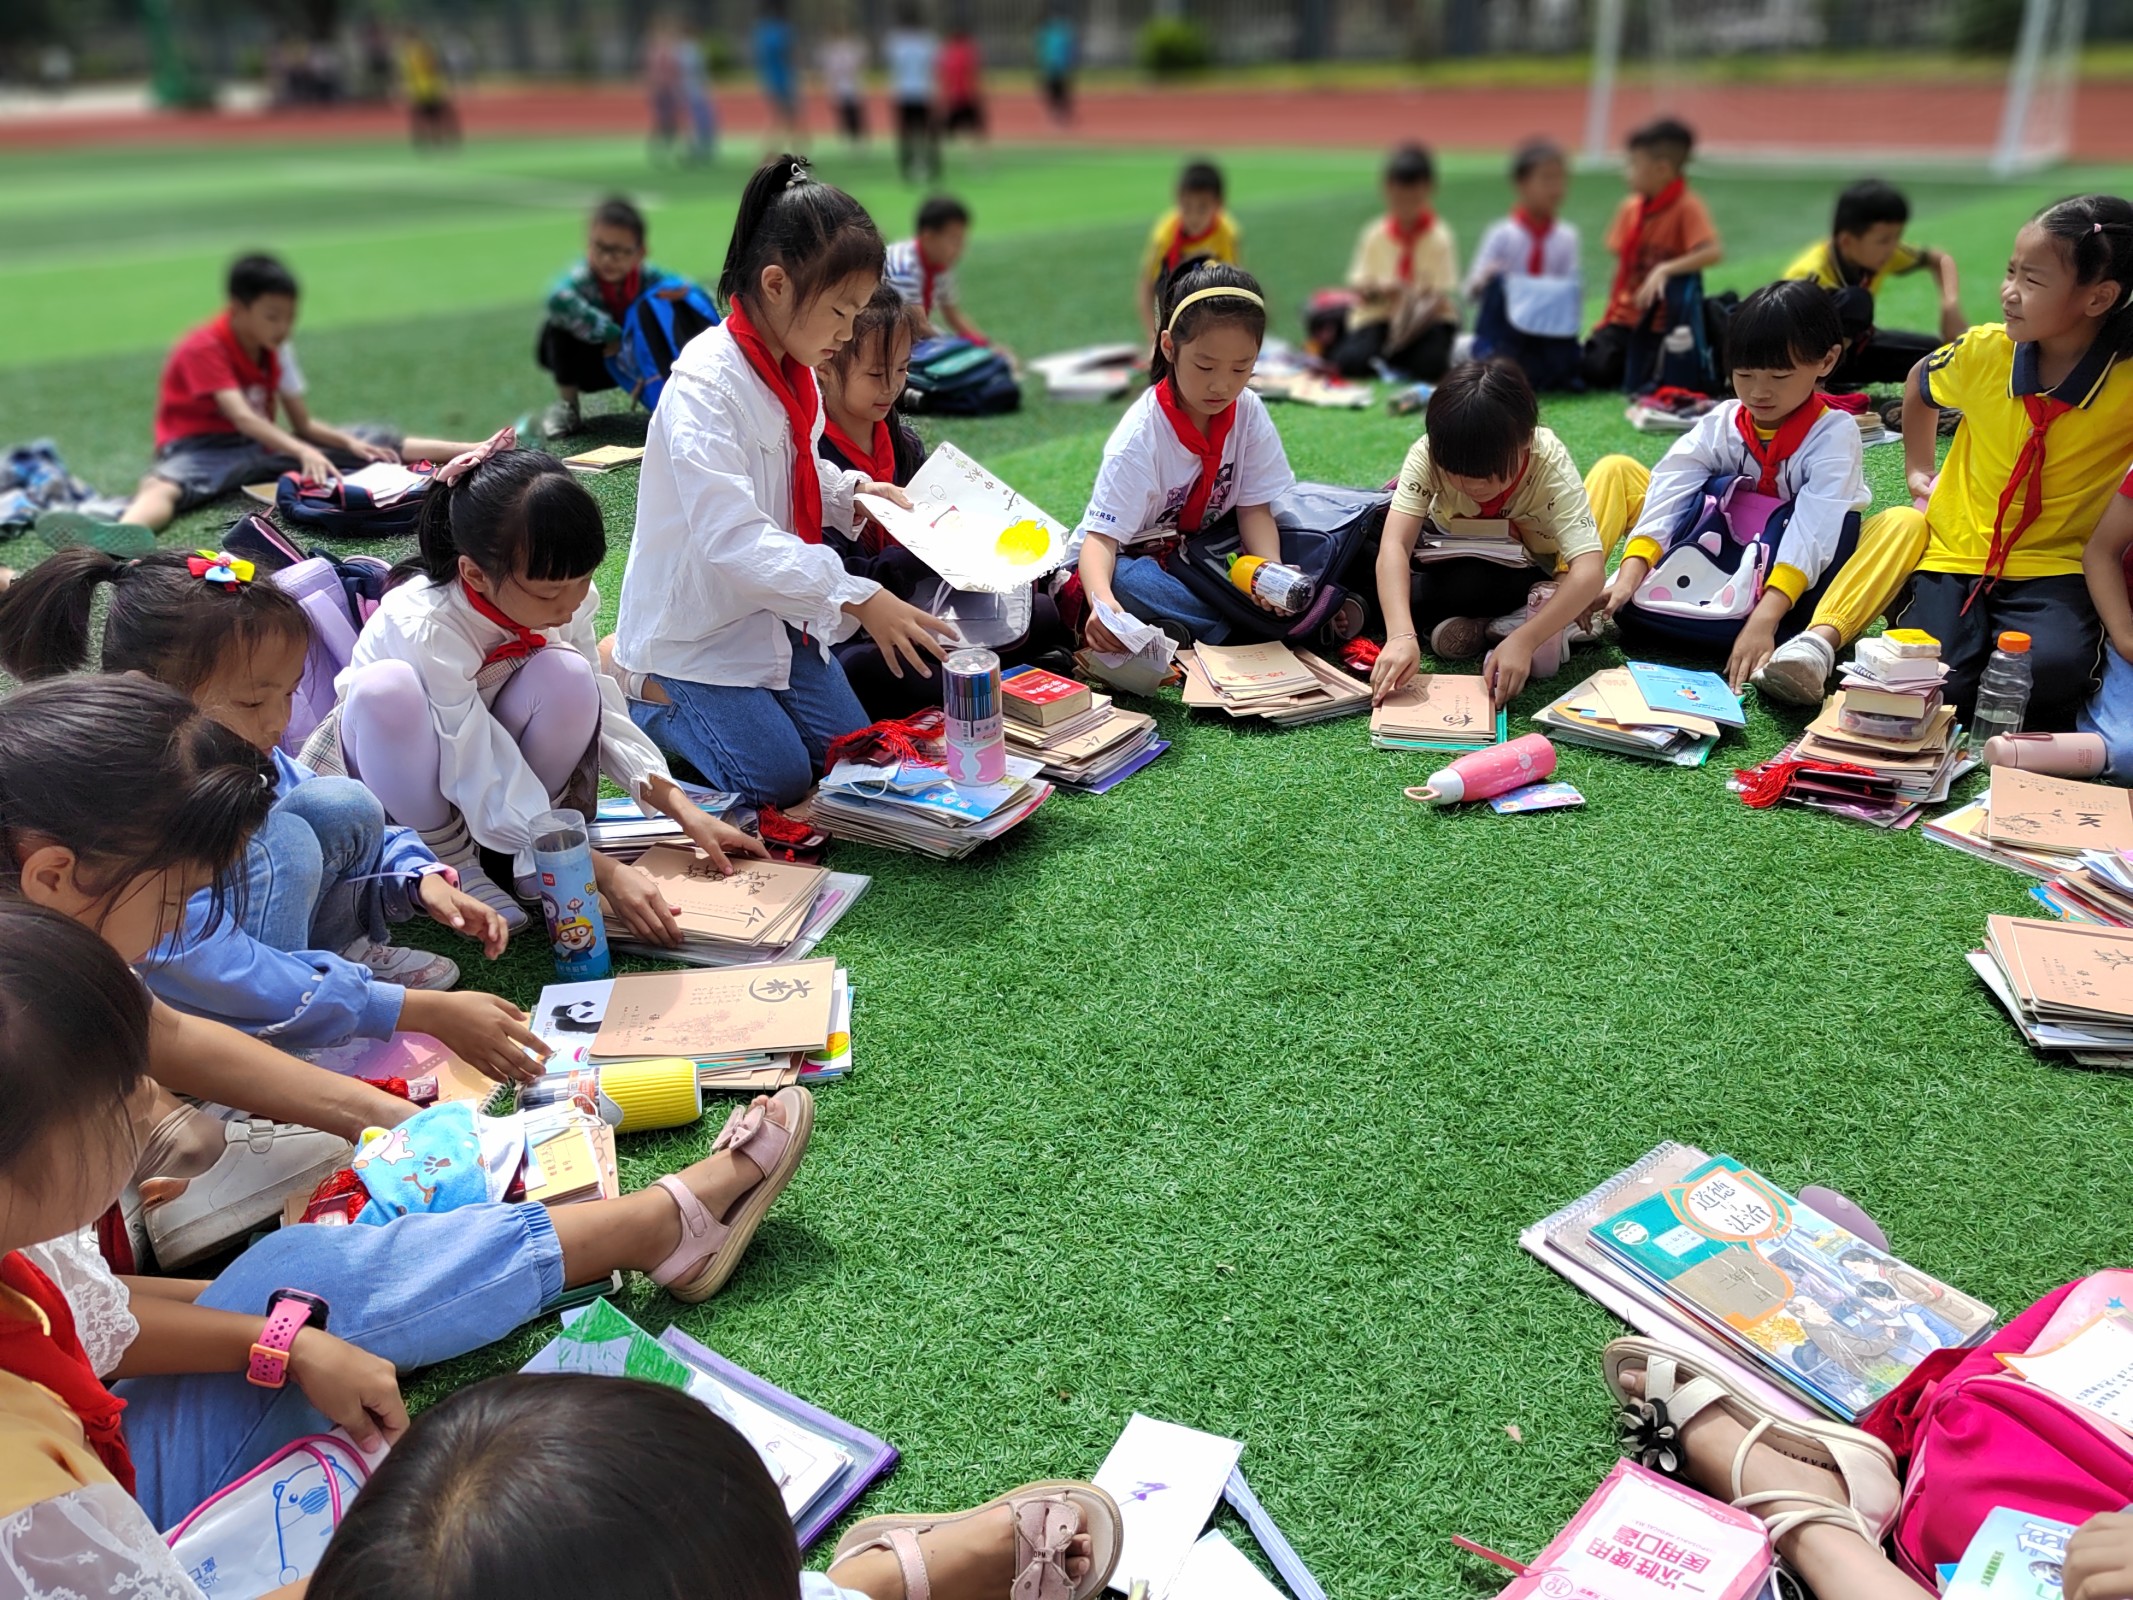 兴义市第十小学学生整理书包.jpg